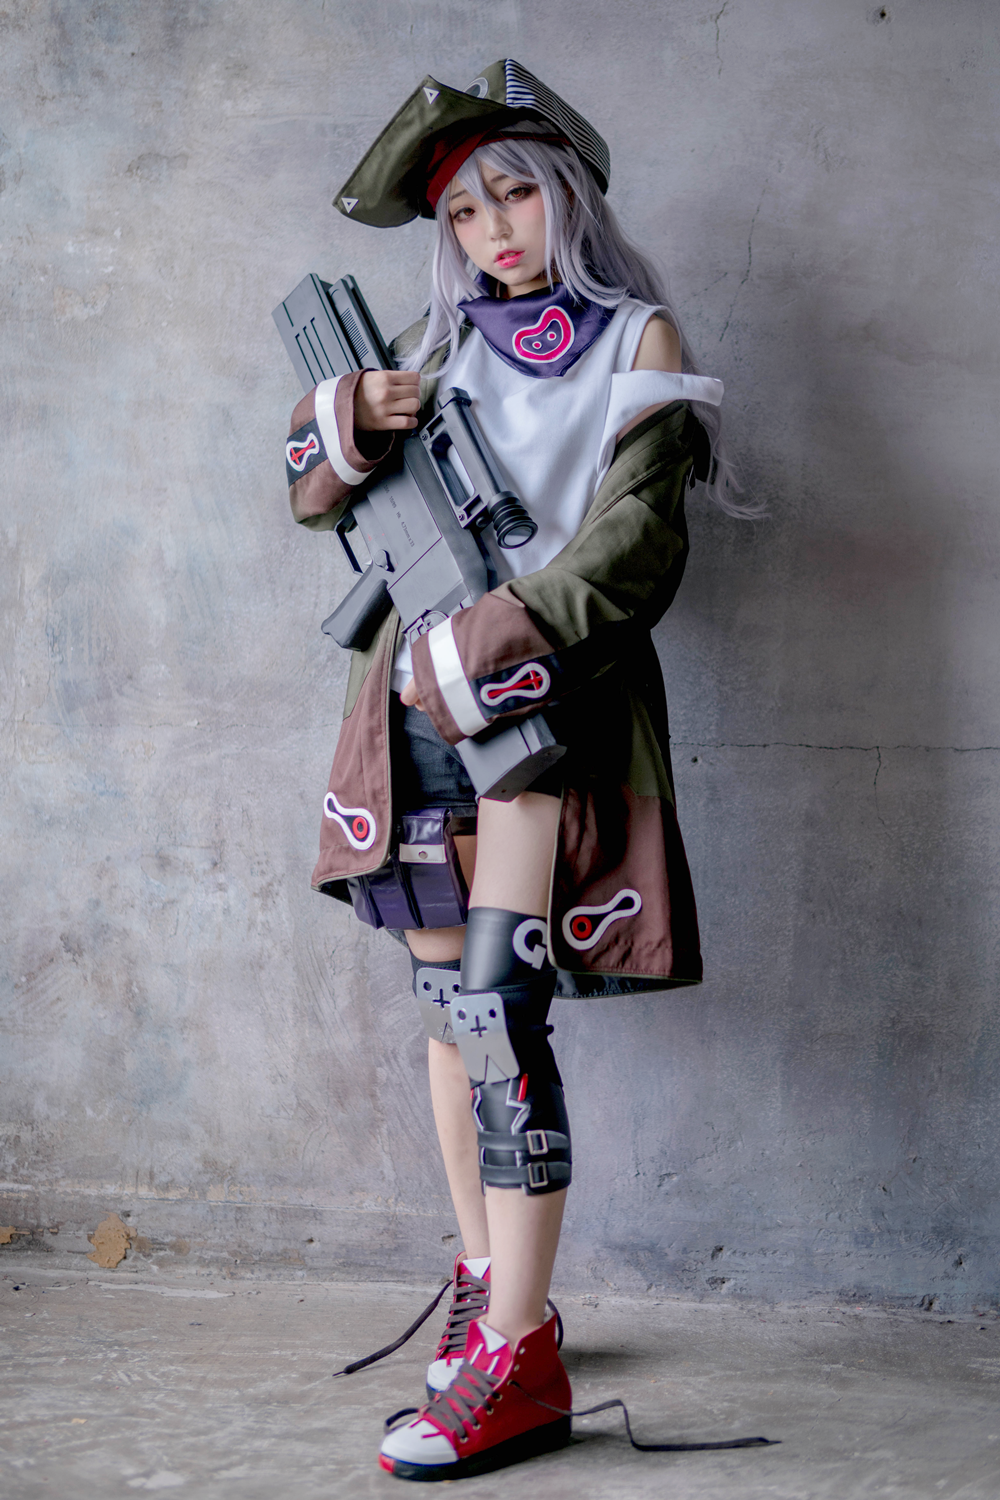 G11 girl frontline cosplay